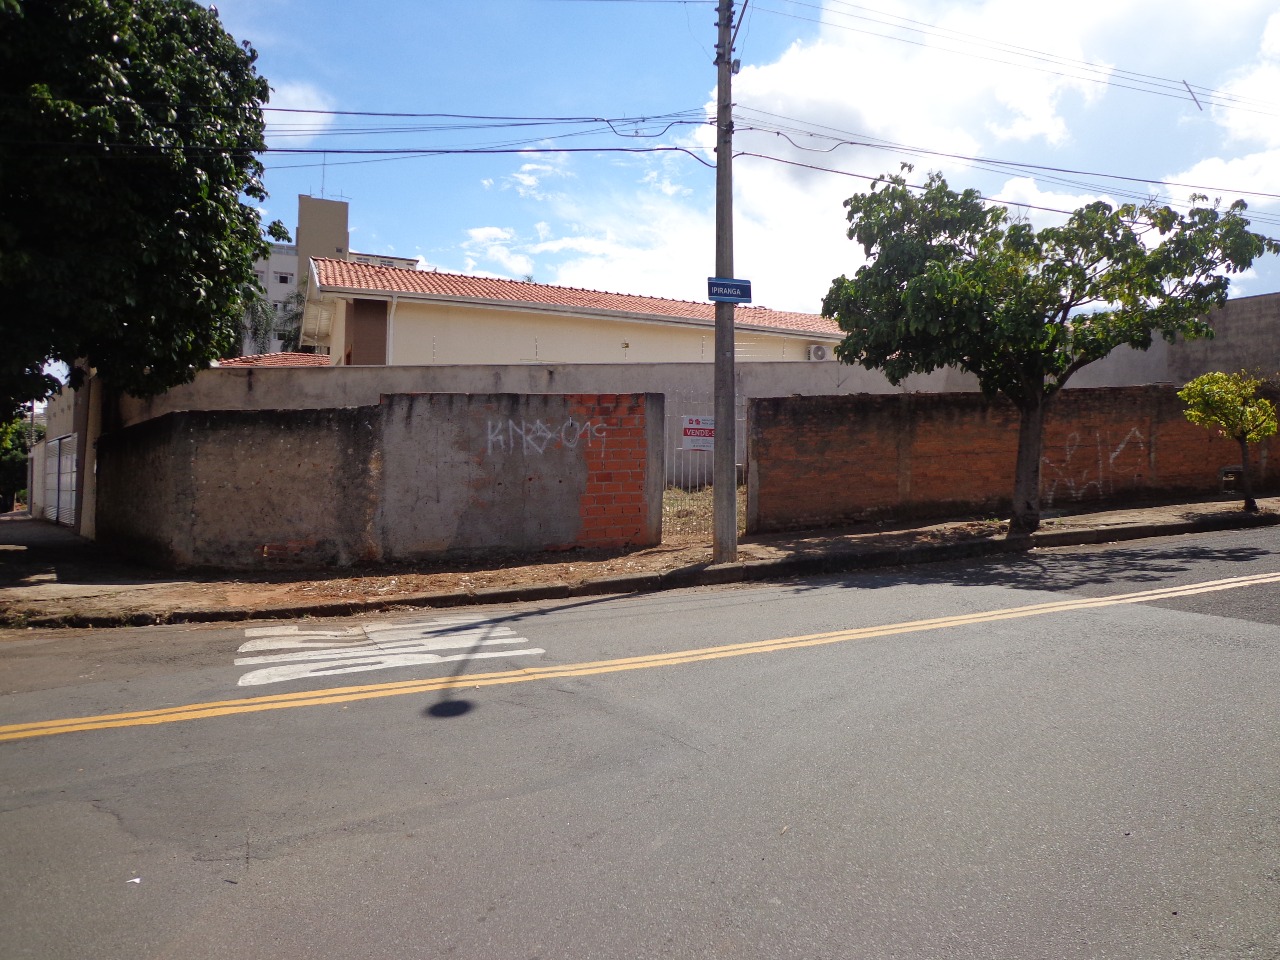 Terreno para comprar, no bairro Nova América em Piracicaba - SP